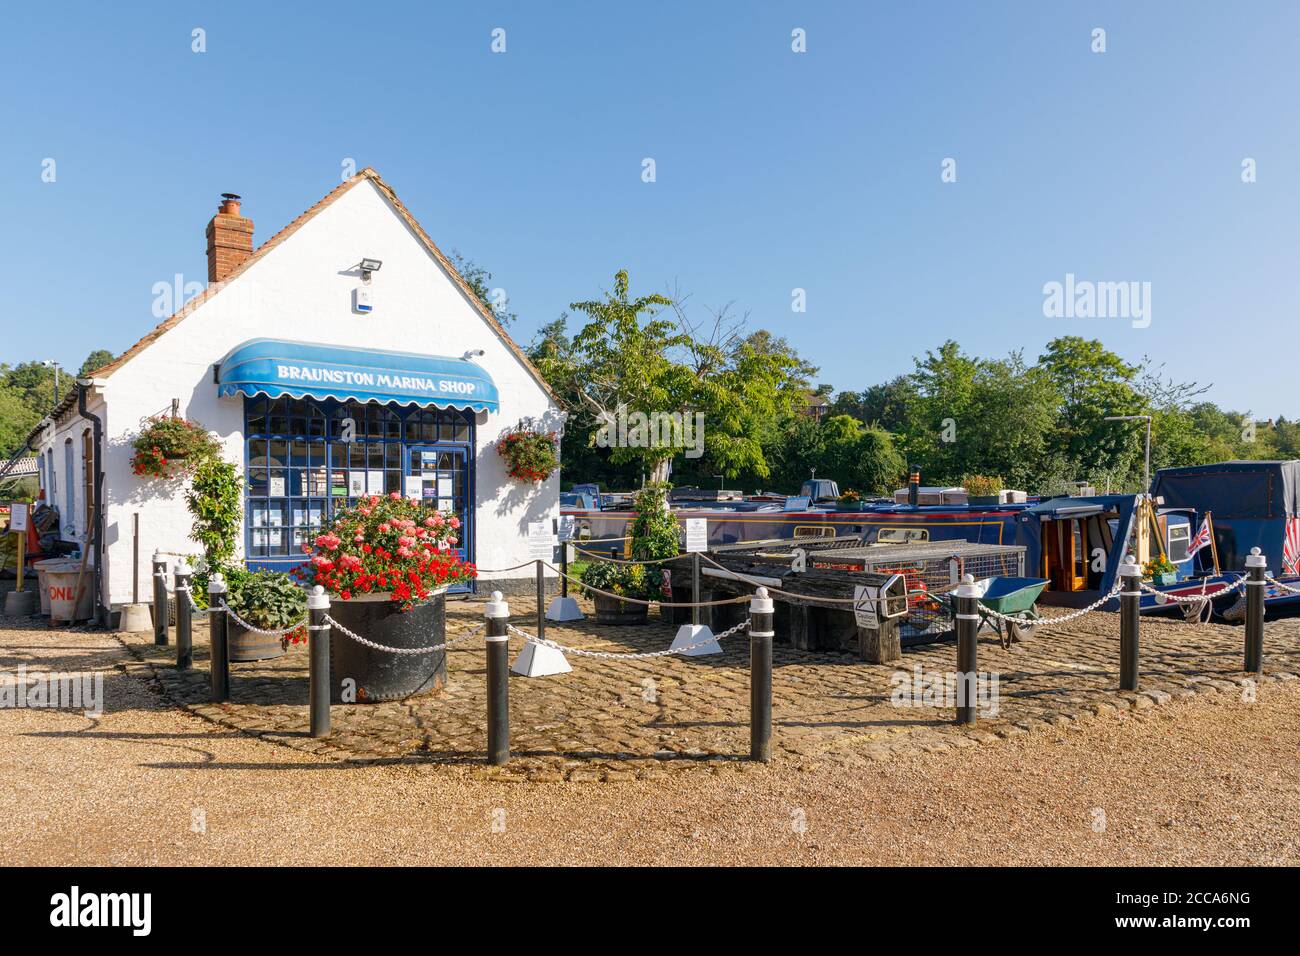 Braunston, Northamptonshire, UK - 20/08/20: Il negozio di Braunston Marina vende articoli per i navigatori che utilizzano i vicini canali Grand Union e Oxford. Foto Stock